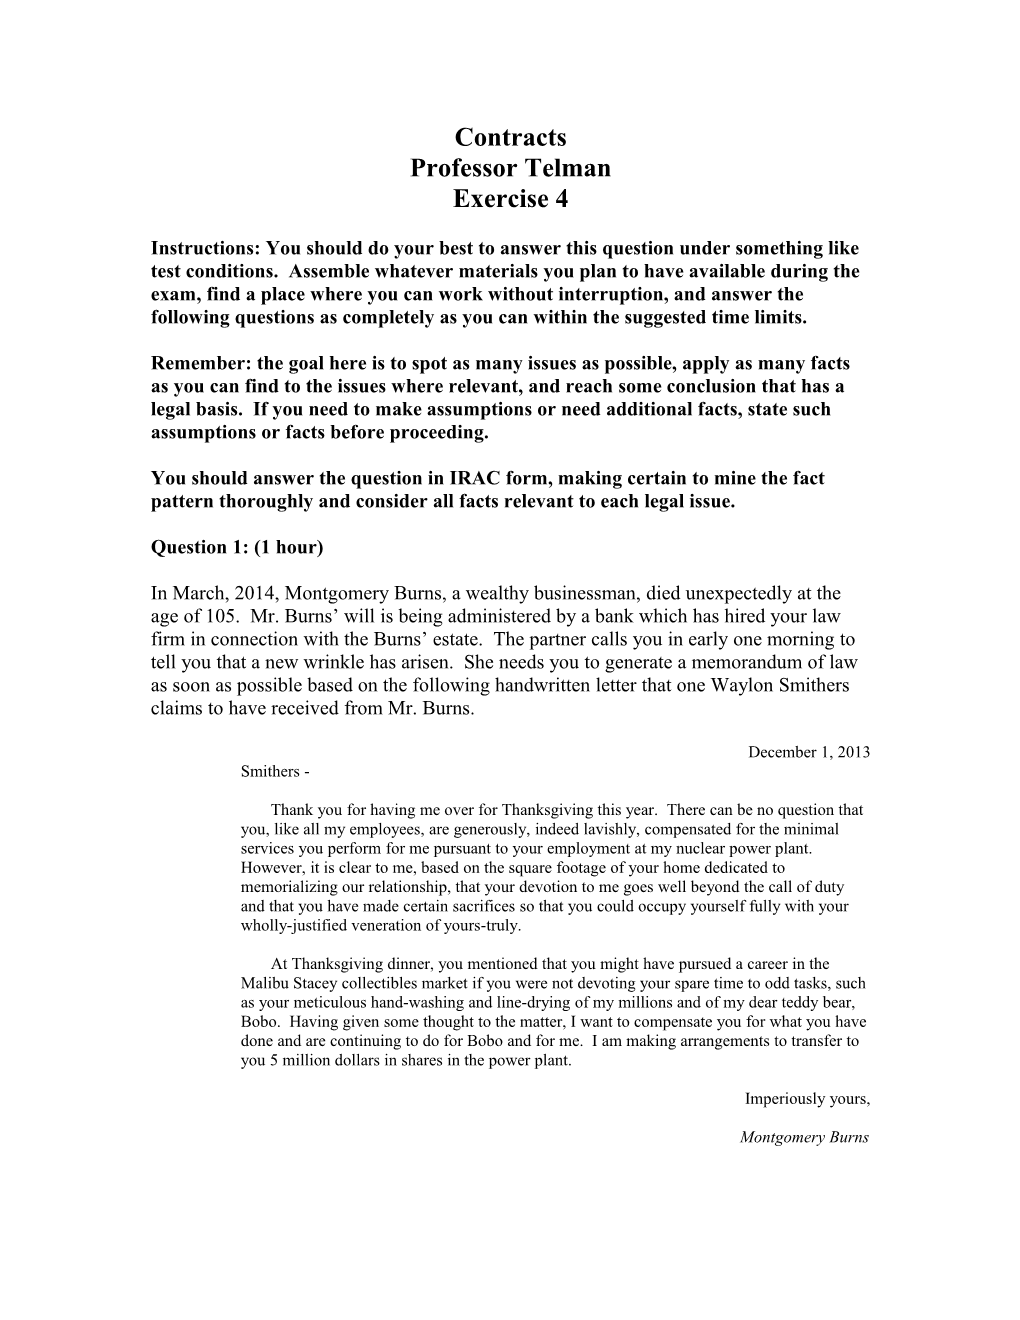 Contracts Professor Telman Exercise 4